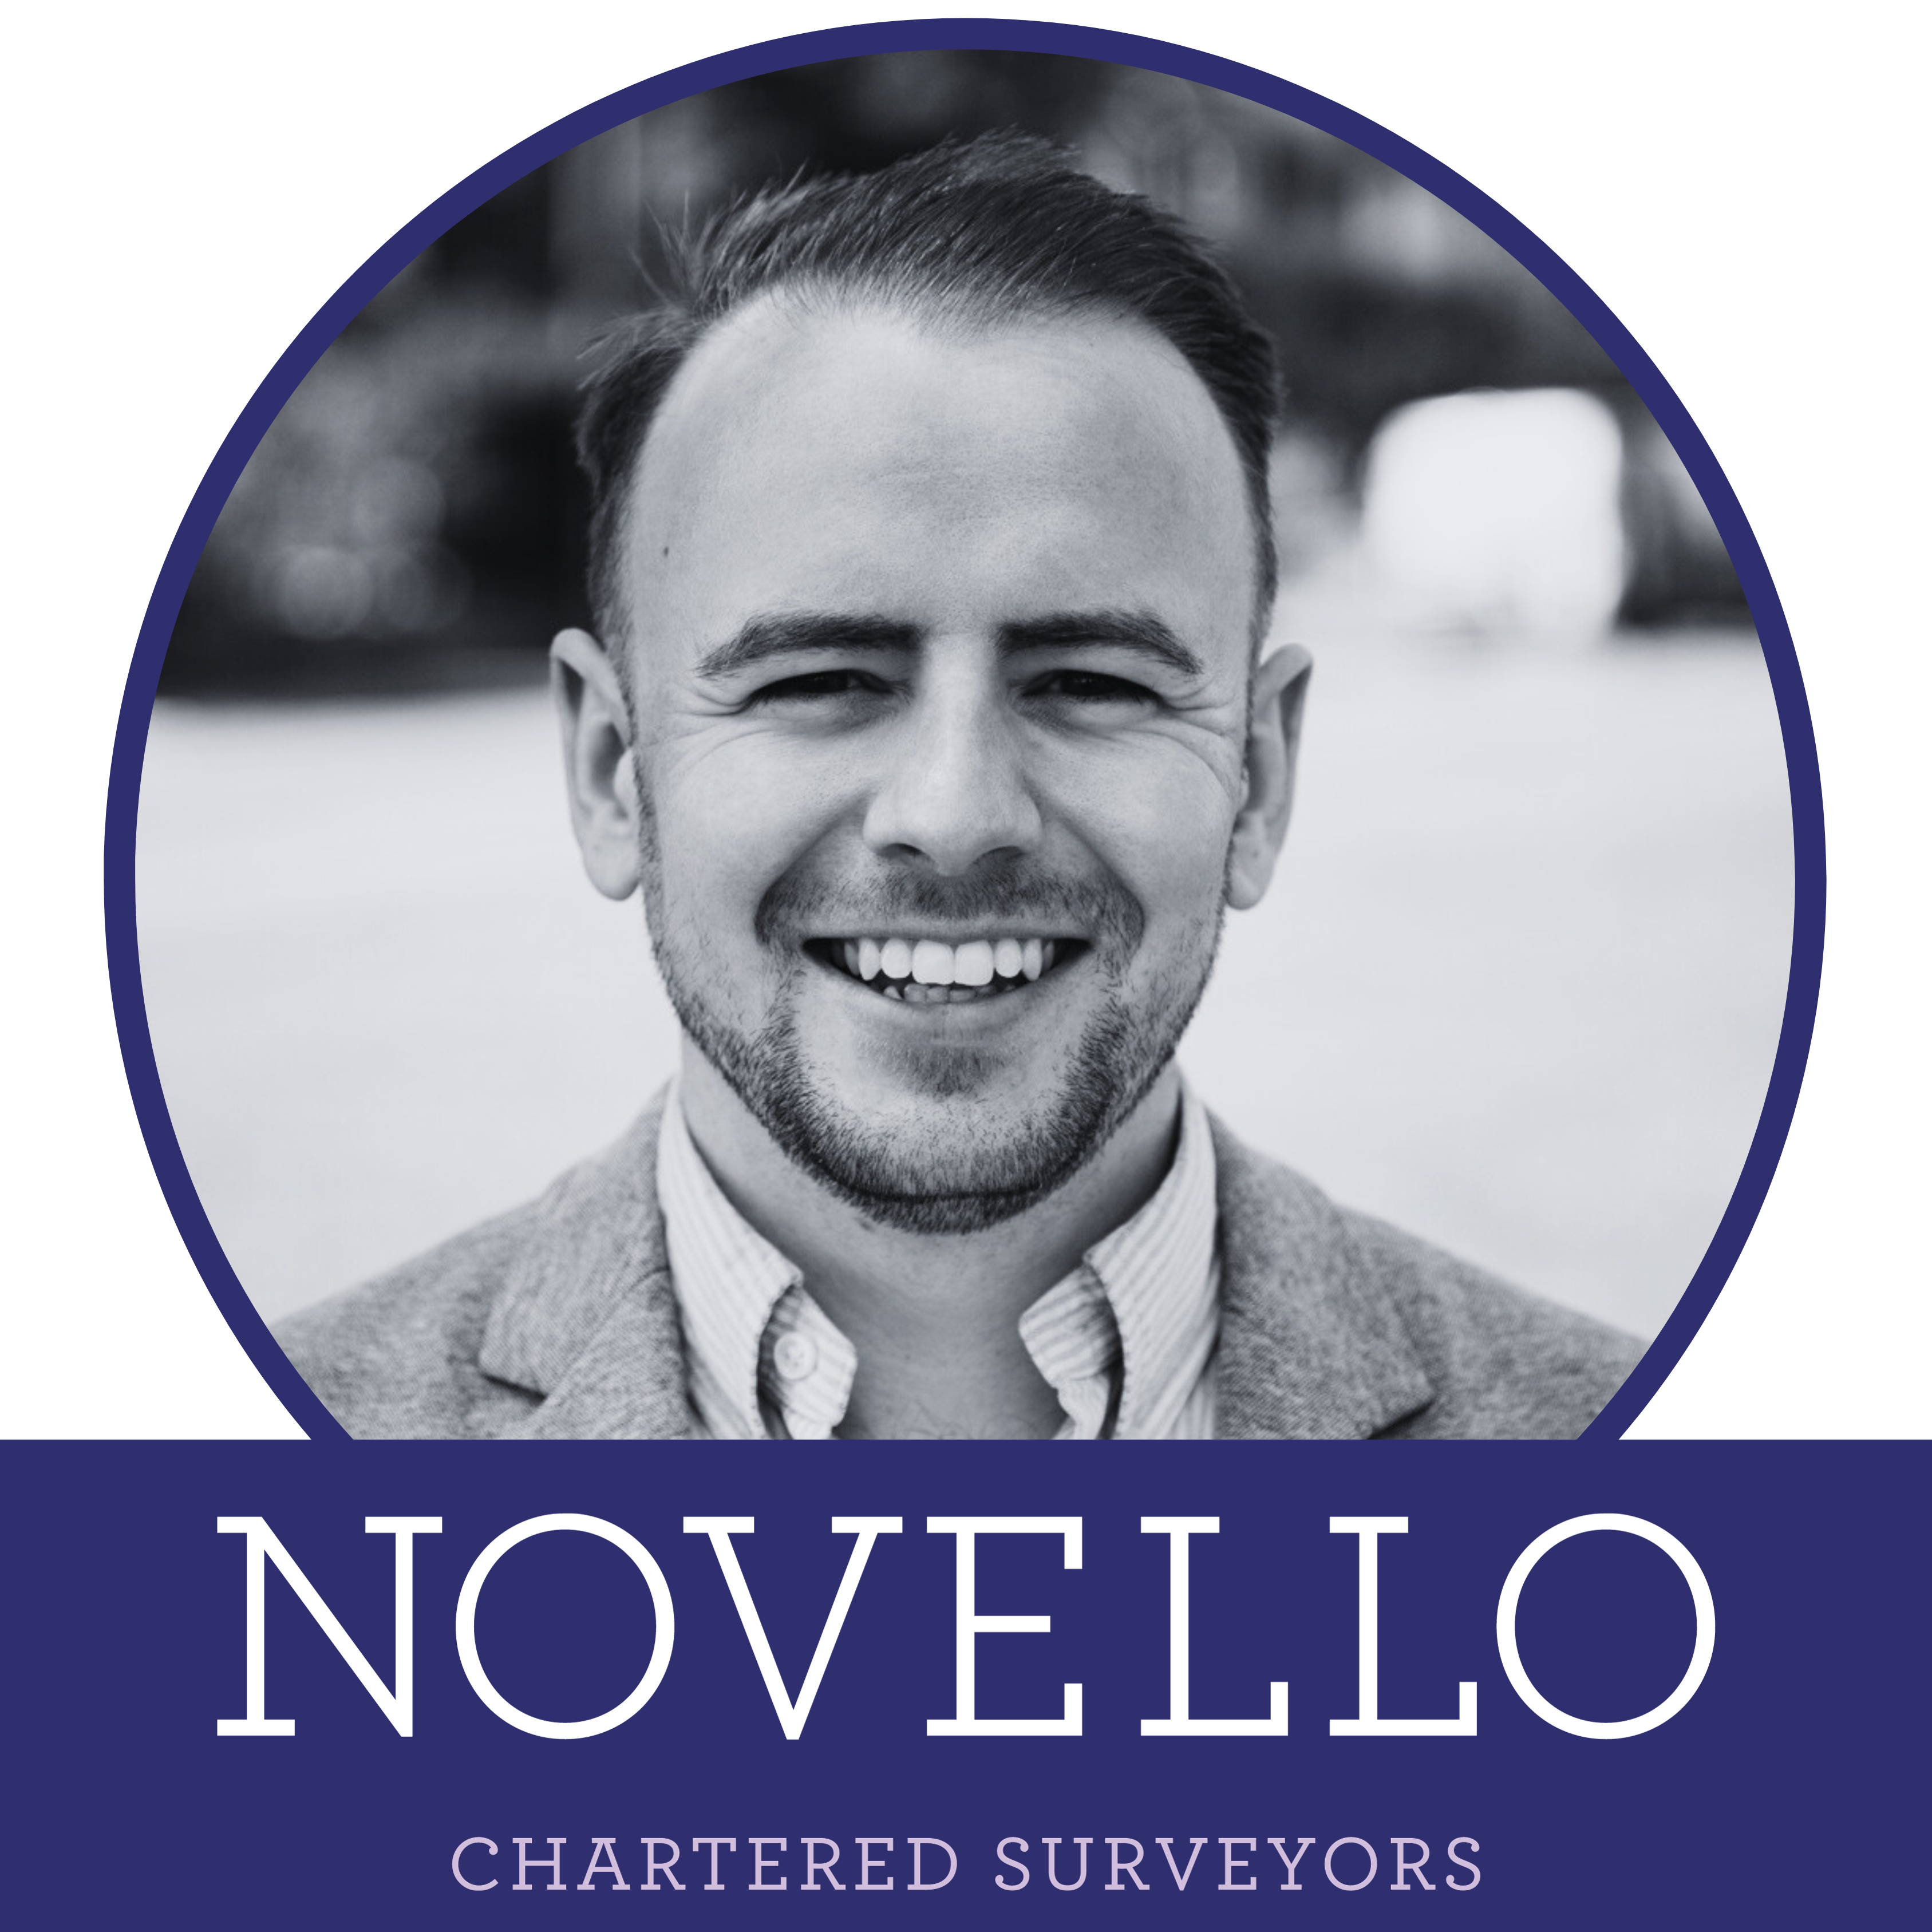 Novello-Chartered-Surveyors